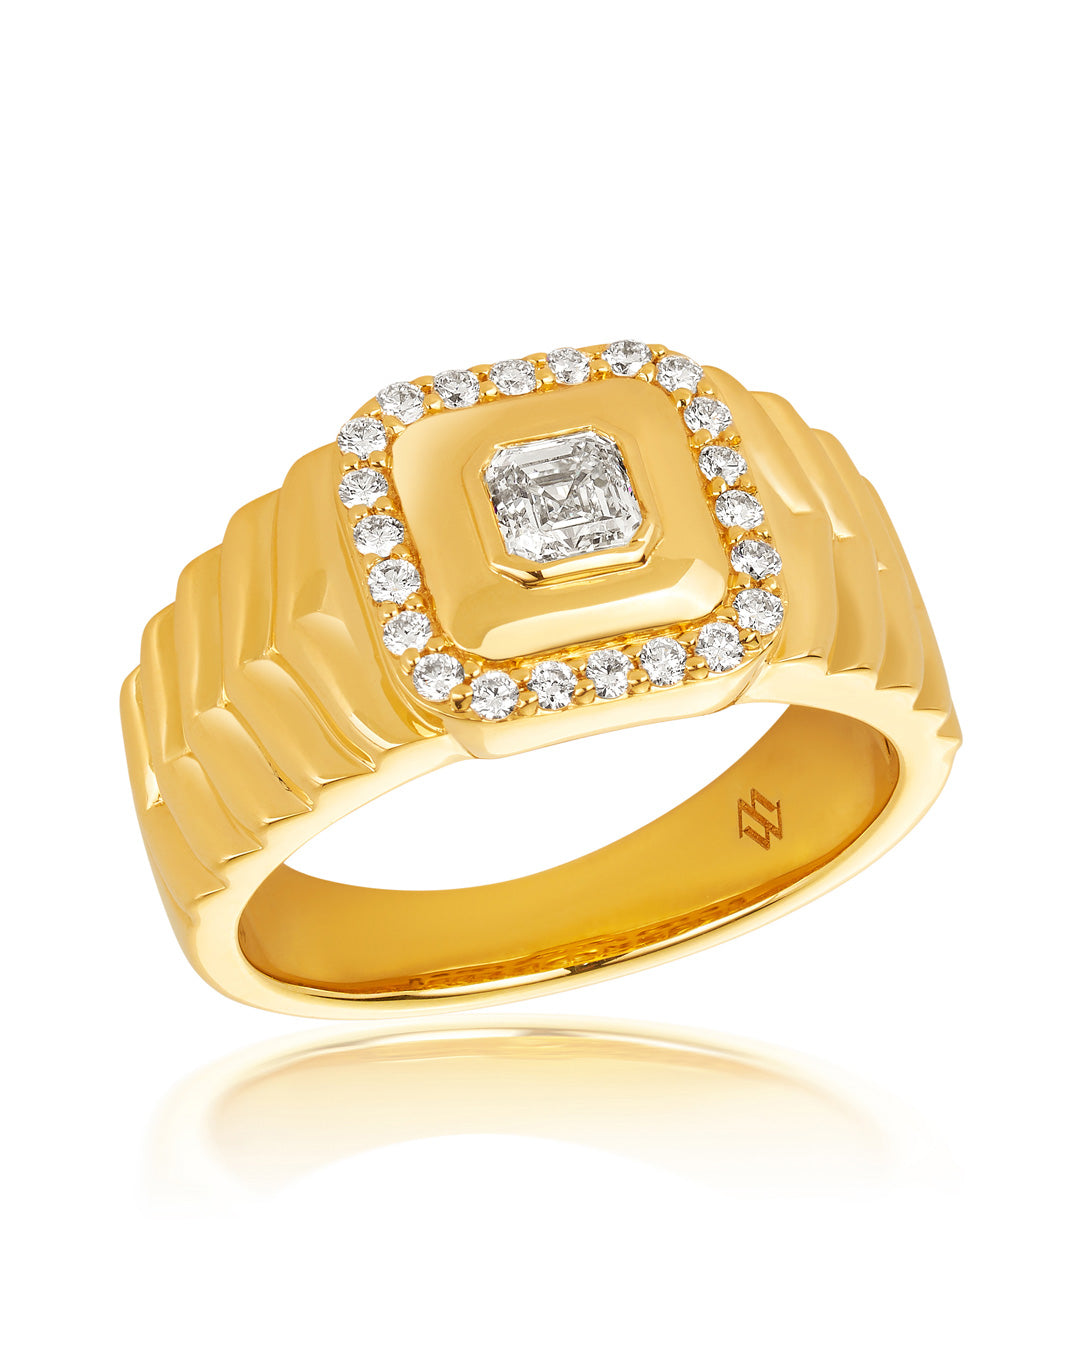 ‘Asscher’ - Round and Asscher Cut Diamond Ring – McKinney Welch AUS